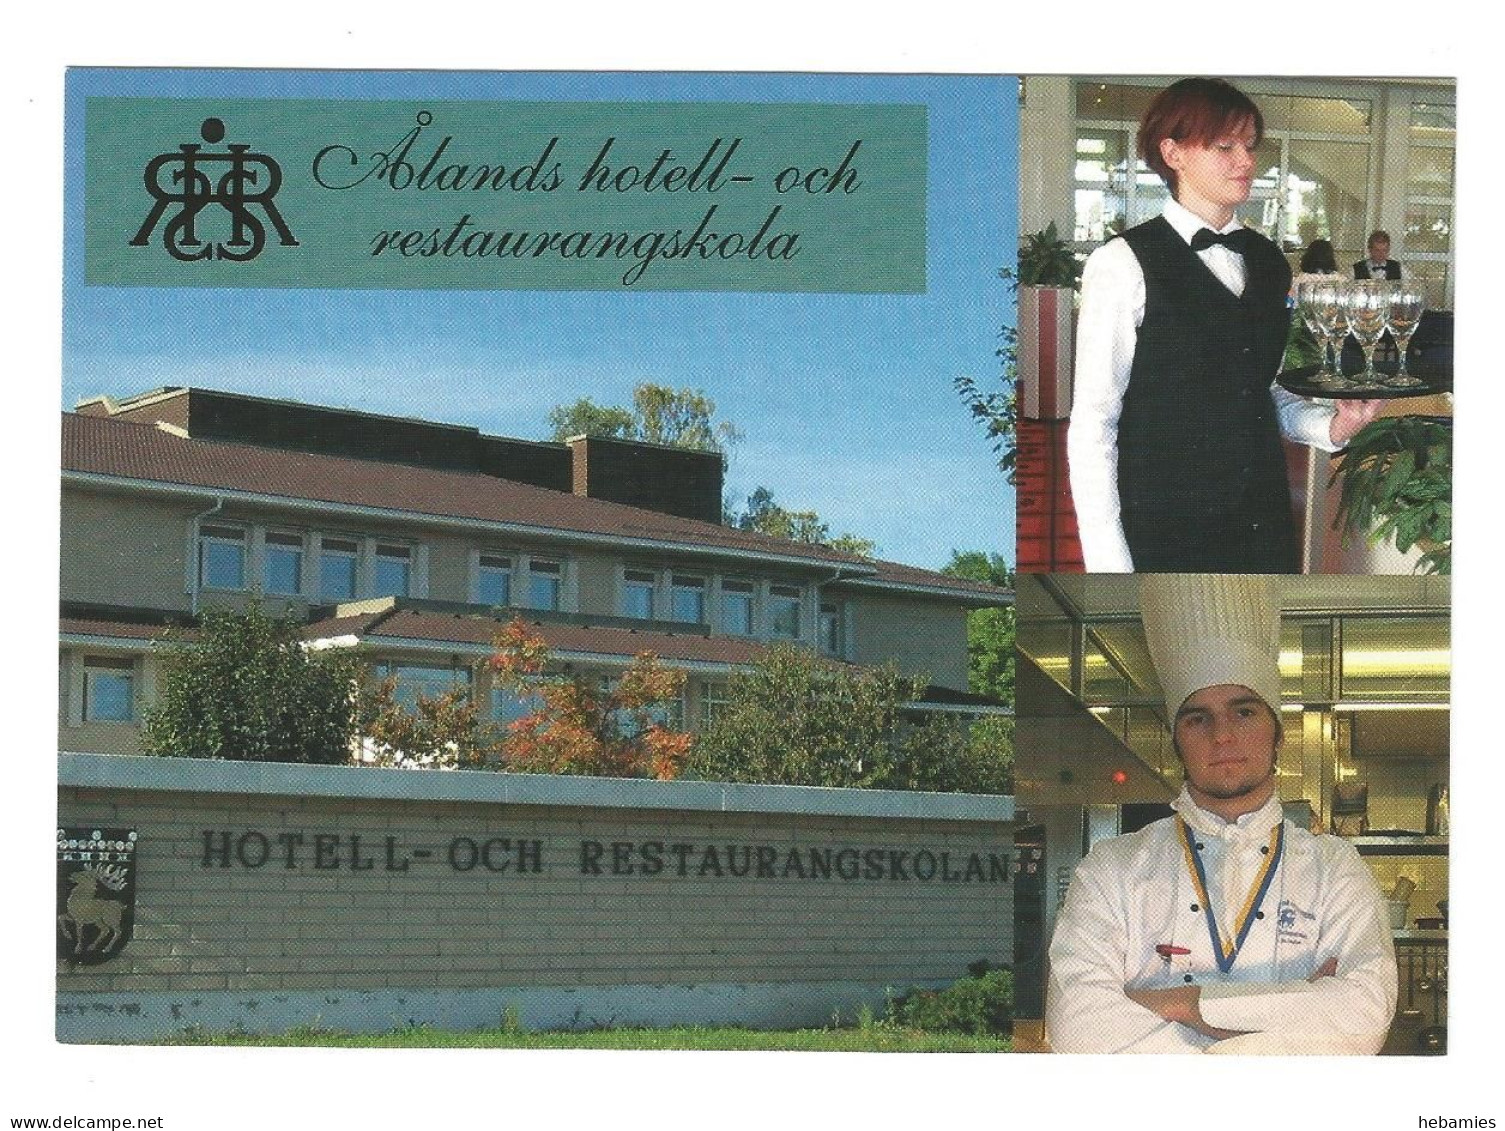 ÅLAND - HOTEL And RESTAURANT SCHOOL In MARIEHAMN - FINLAND - - Finlande